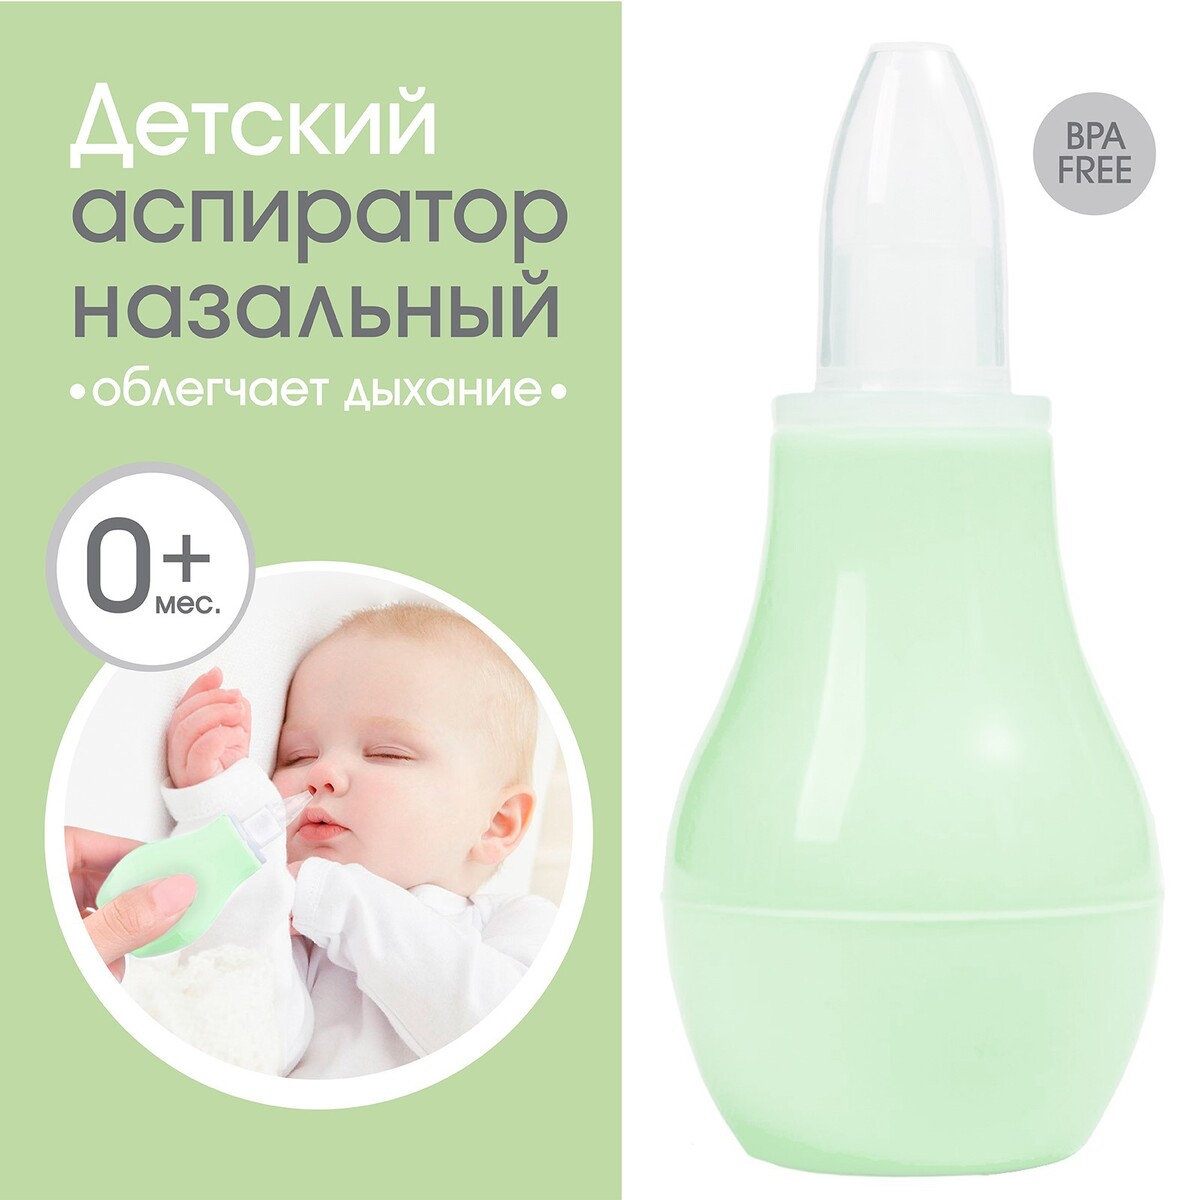 Детский назальный аспиратор, с колпачком, цвет зеленый аспиратор baby vac назальный детский